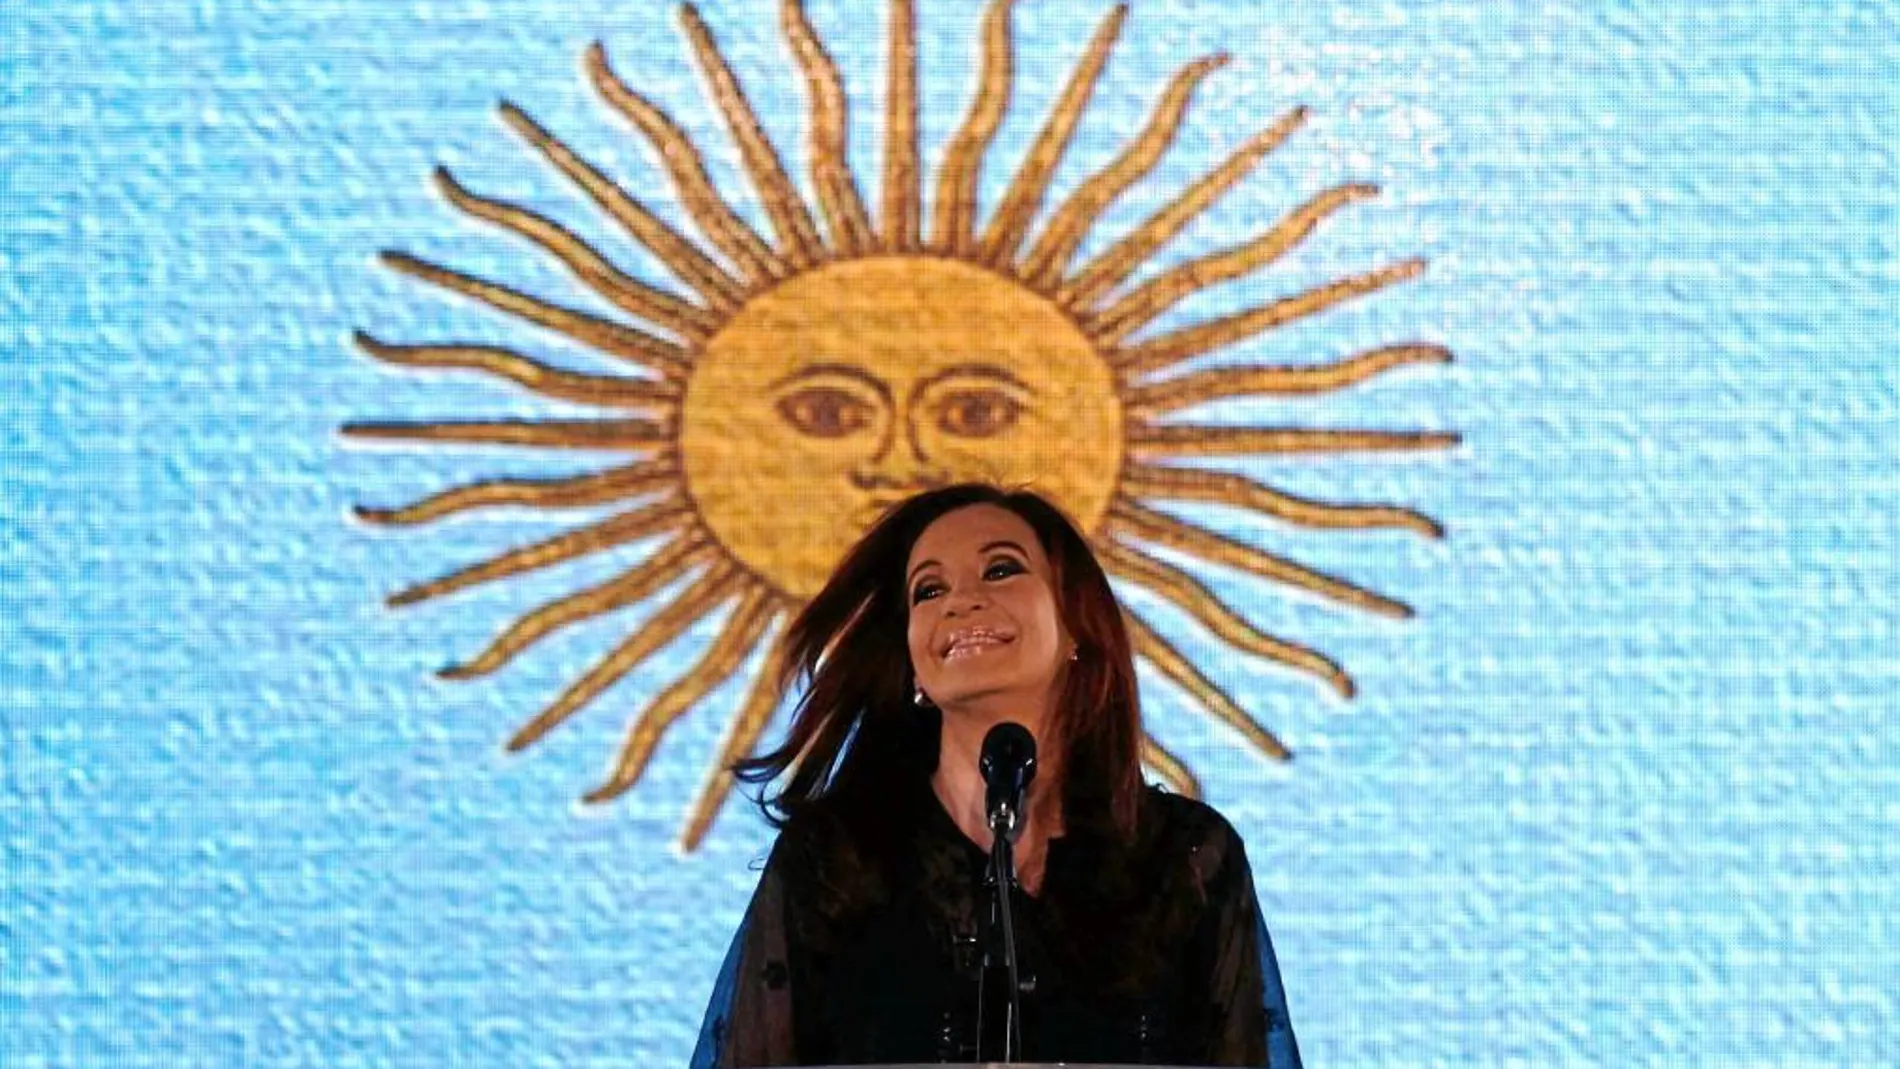 ¿FIN DE UNA ERA? Los analistas políticos y económicos se preguntan si Argentina y Kirchner sobrevivirán a la tormenta causada por la suspensión de pagos de mañana